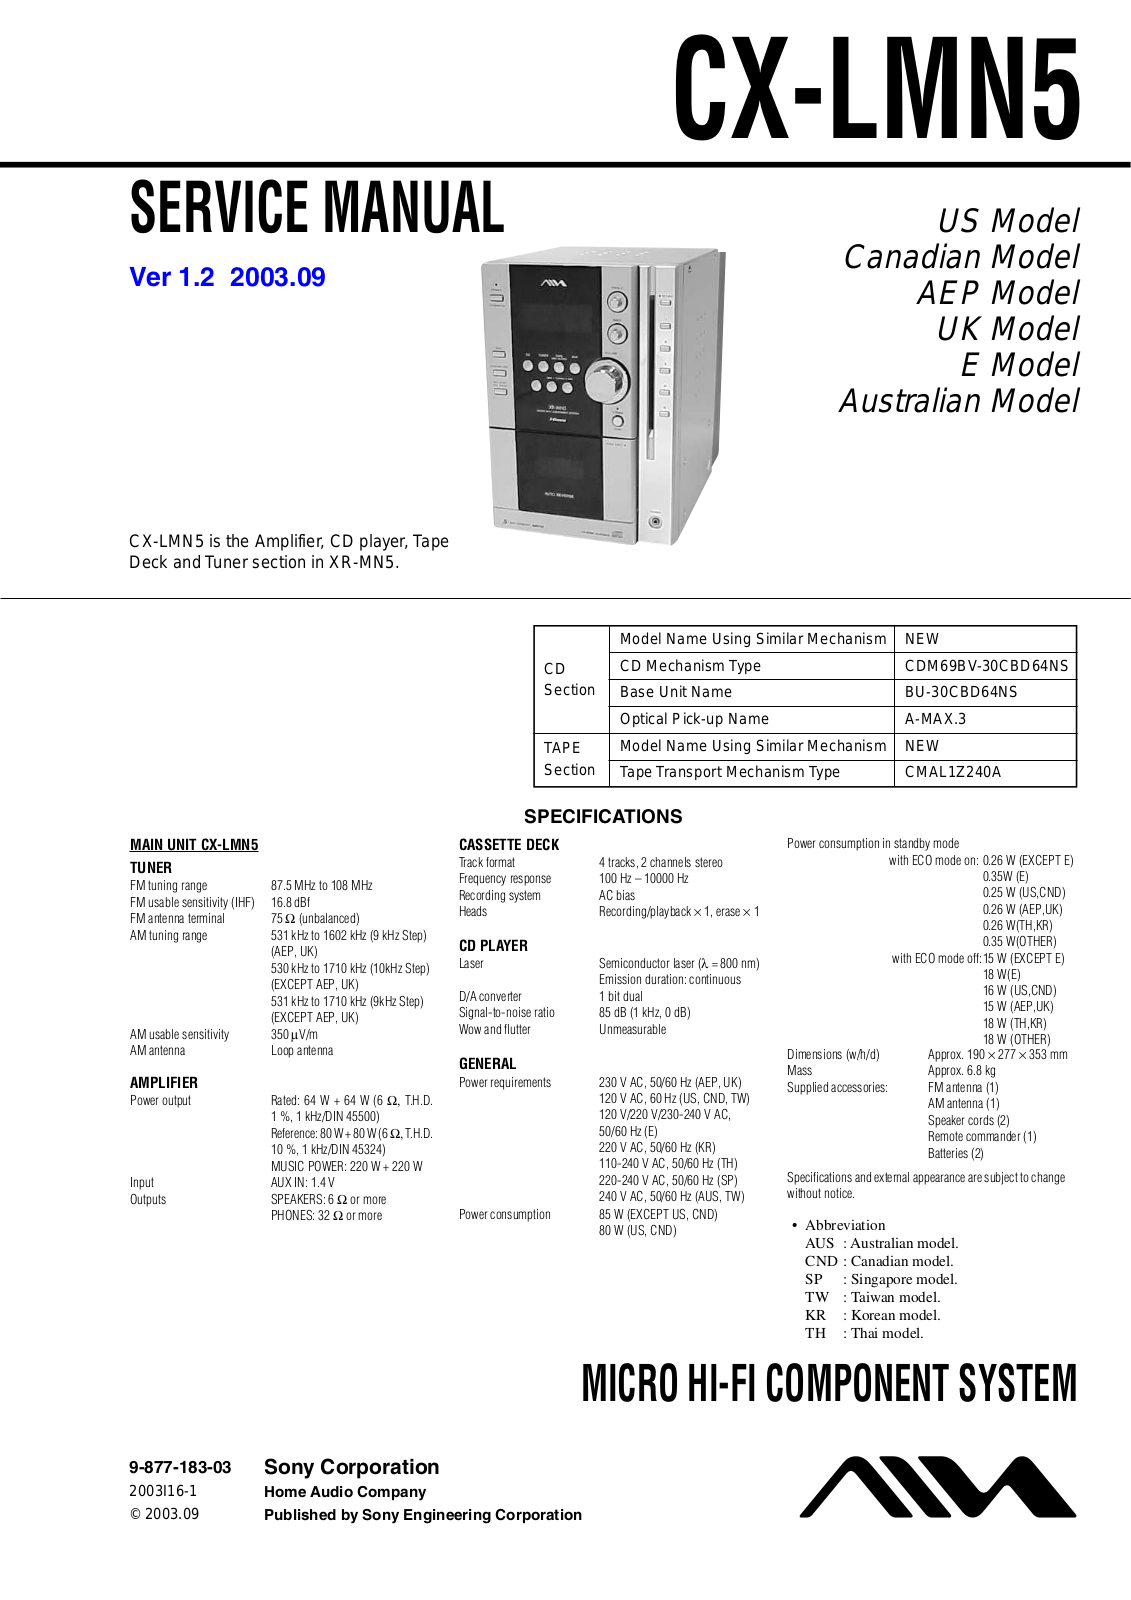 AIWA CX-LMN5 Service Manual